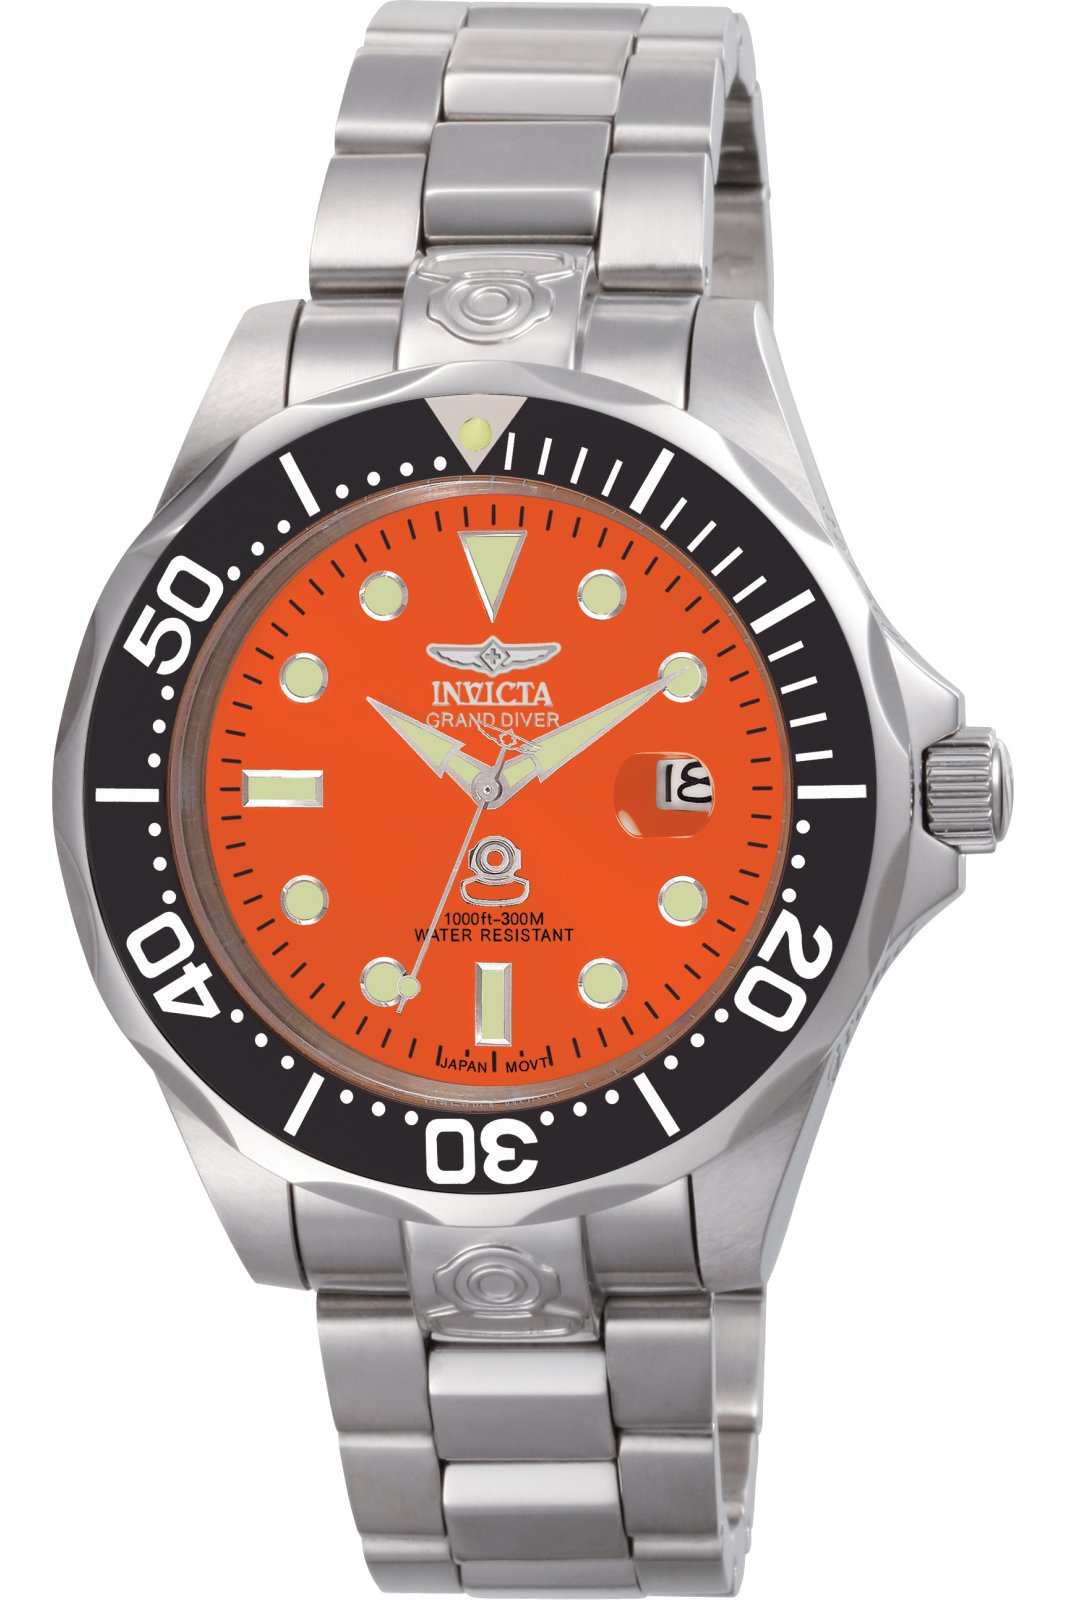 Invicta Horloge Grand Diver 4186 - Officiële Invicta Shop - Gratis ...